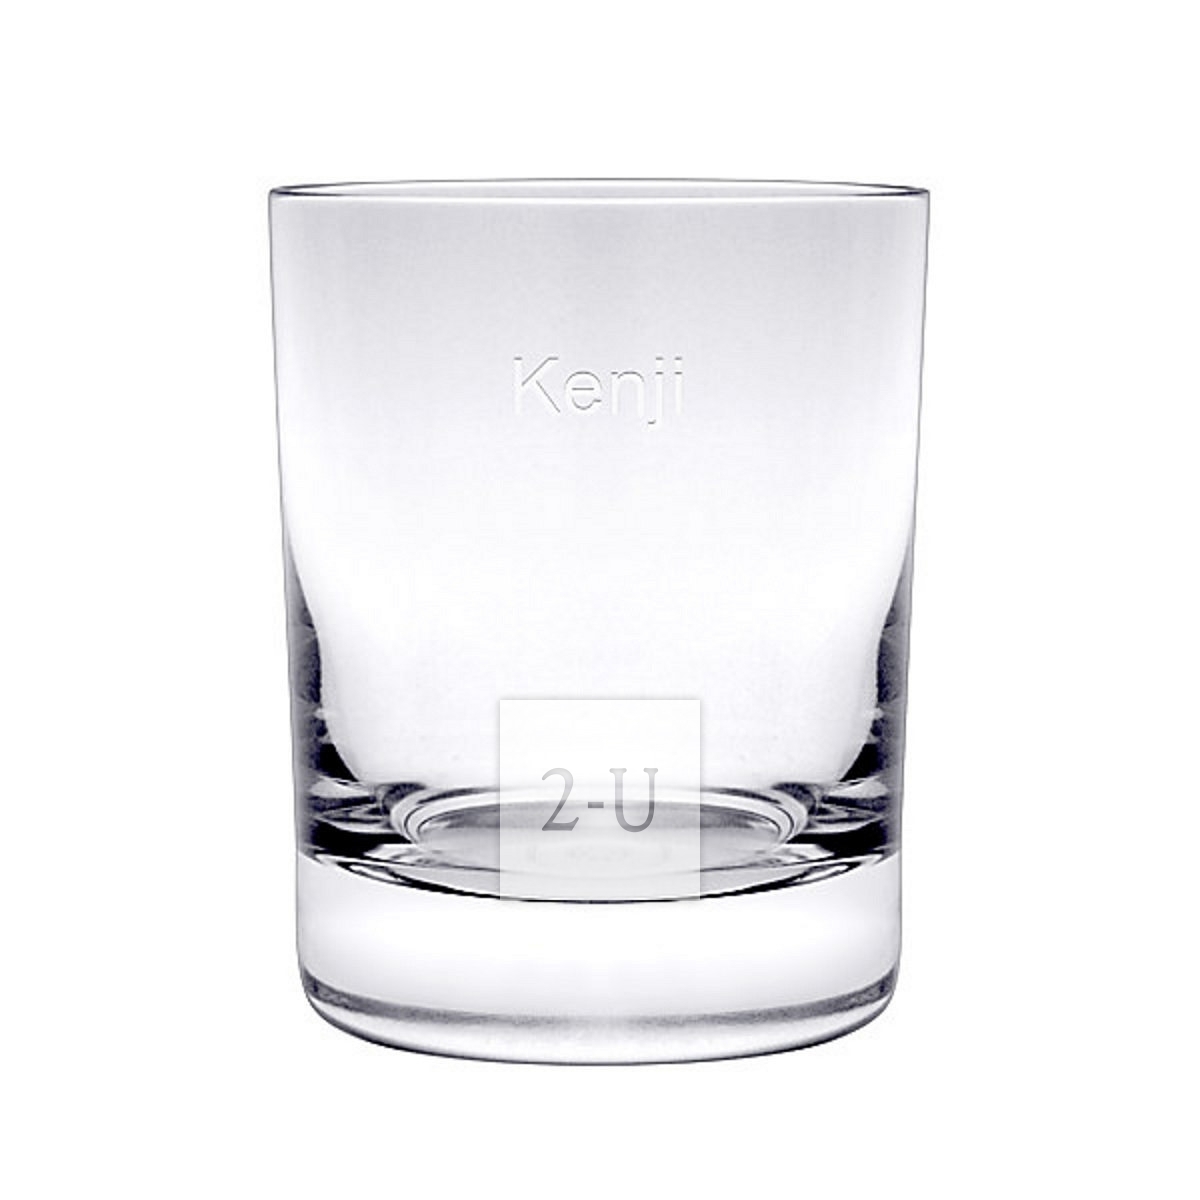 法国巴卡拉 Baccarat Perfection 系列水晶玻璃古典杯